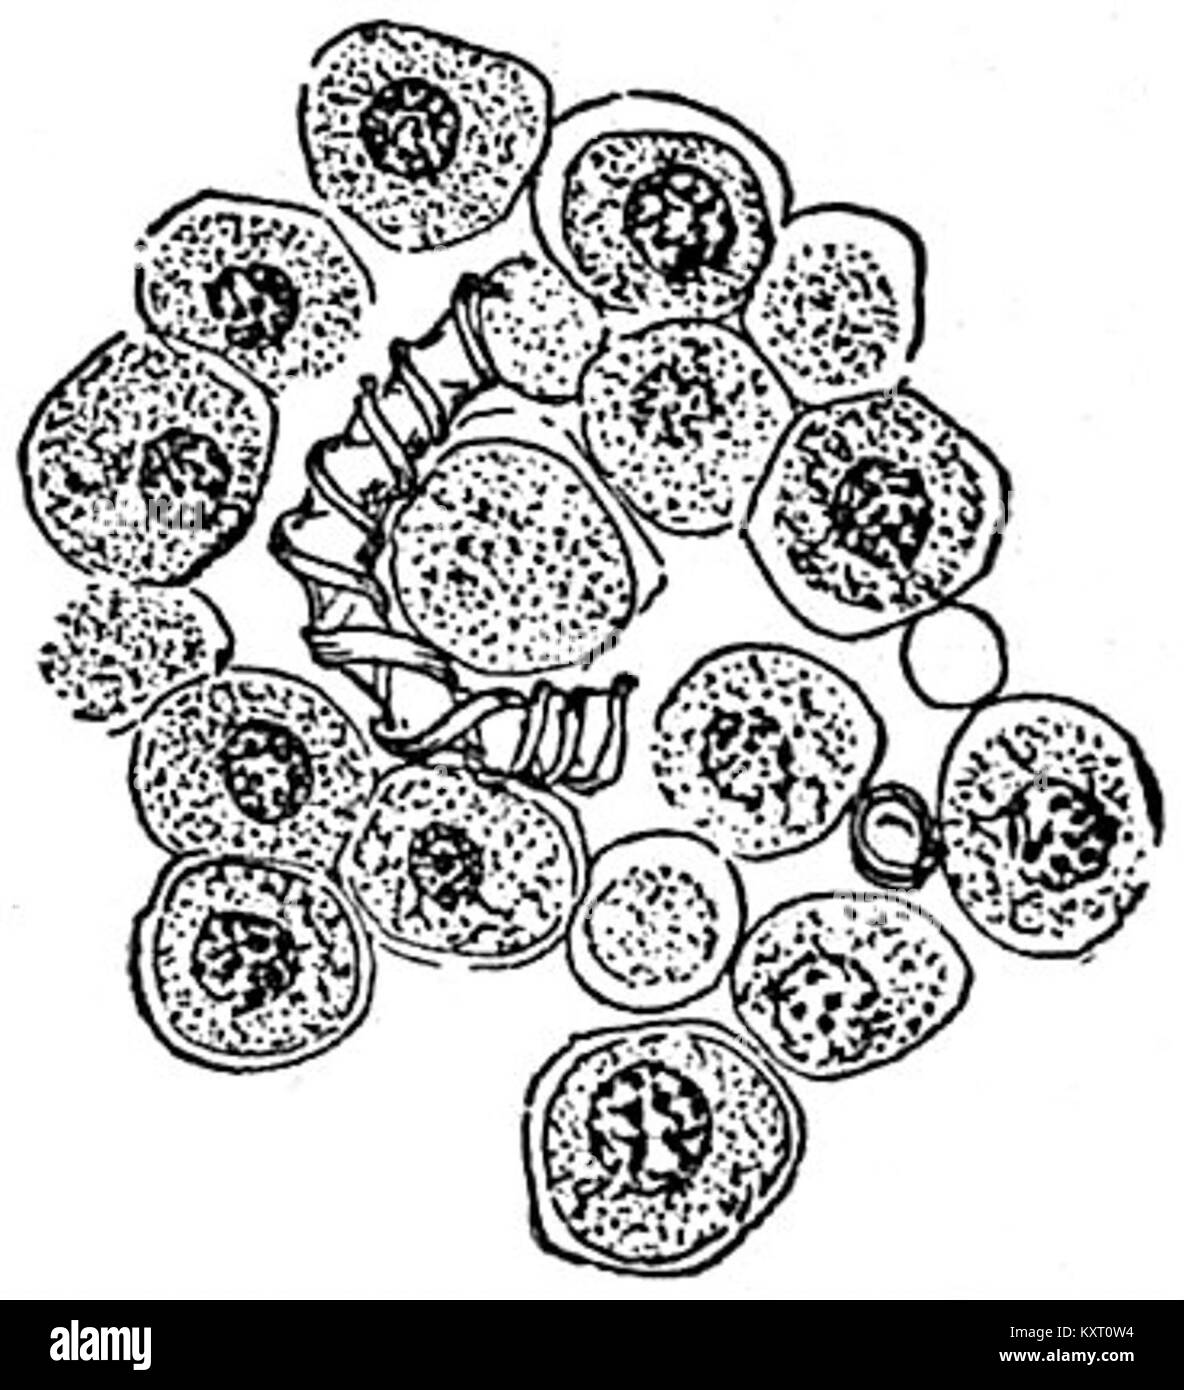 EB1911 Mycetozoa - Trichia varia - sporangium (2) Stock Photo